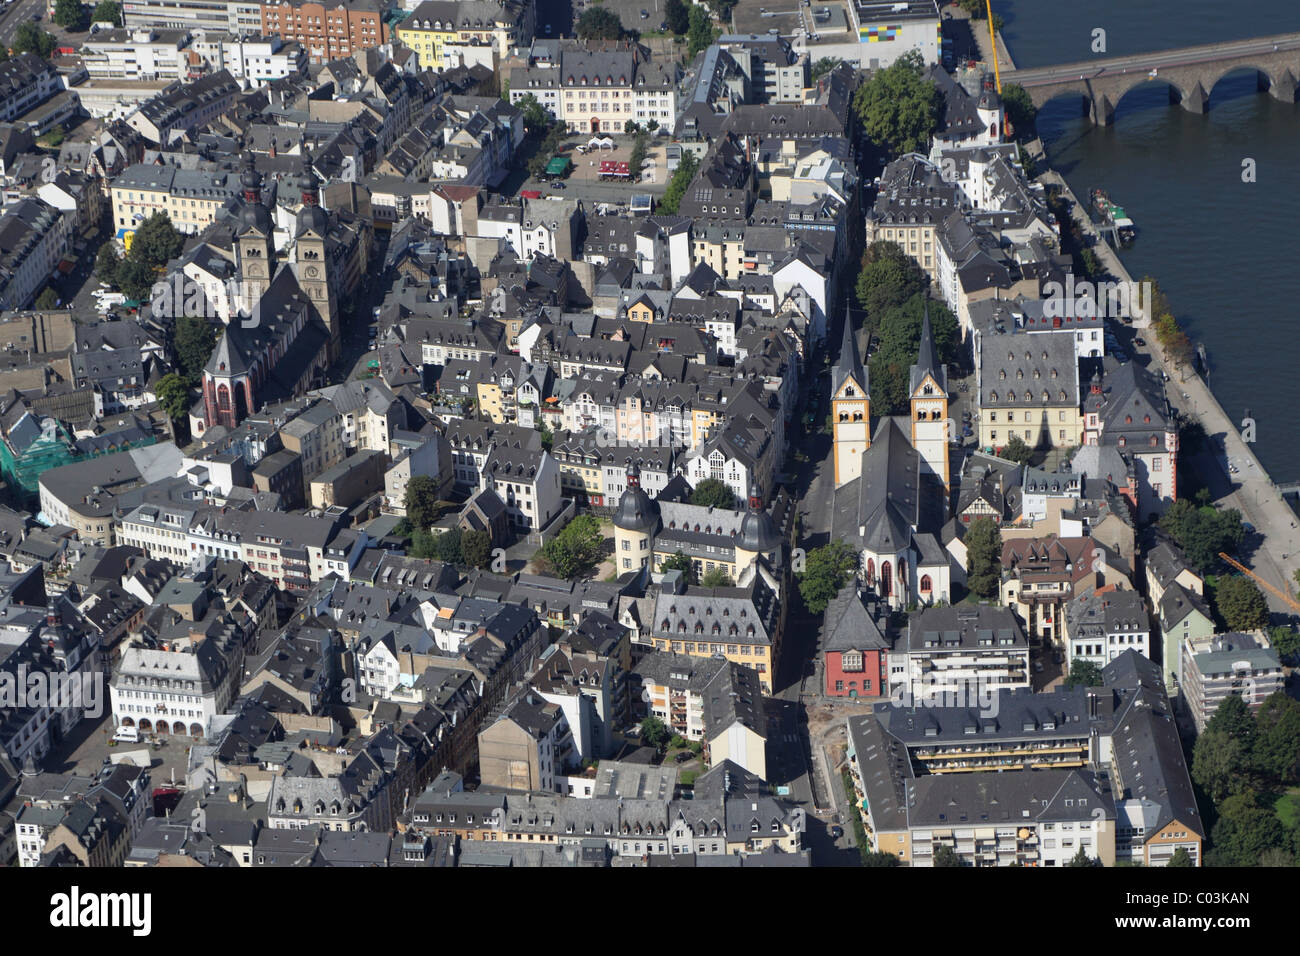 Vista aérea, centro histórico de la ciudad, Koblenz, Renania-Palatinado, Alemania, Europa Foto de stock